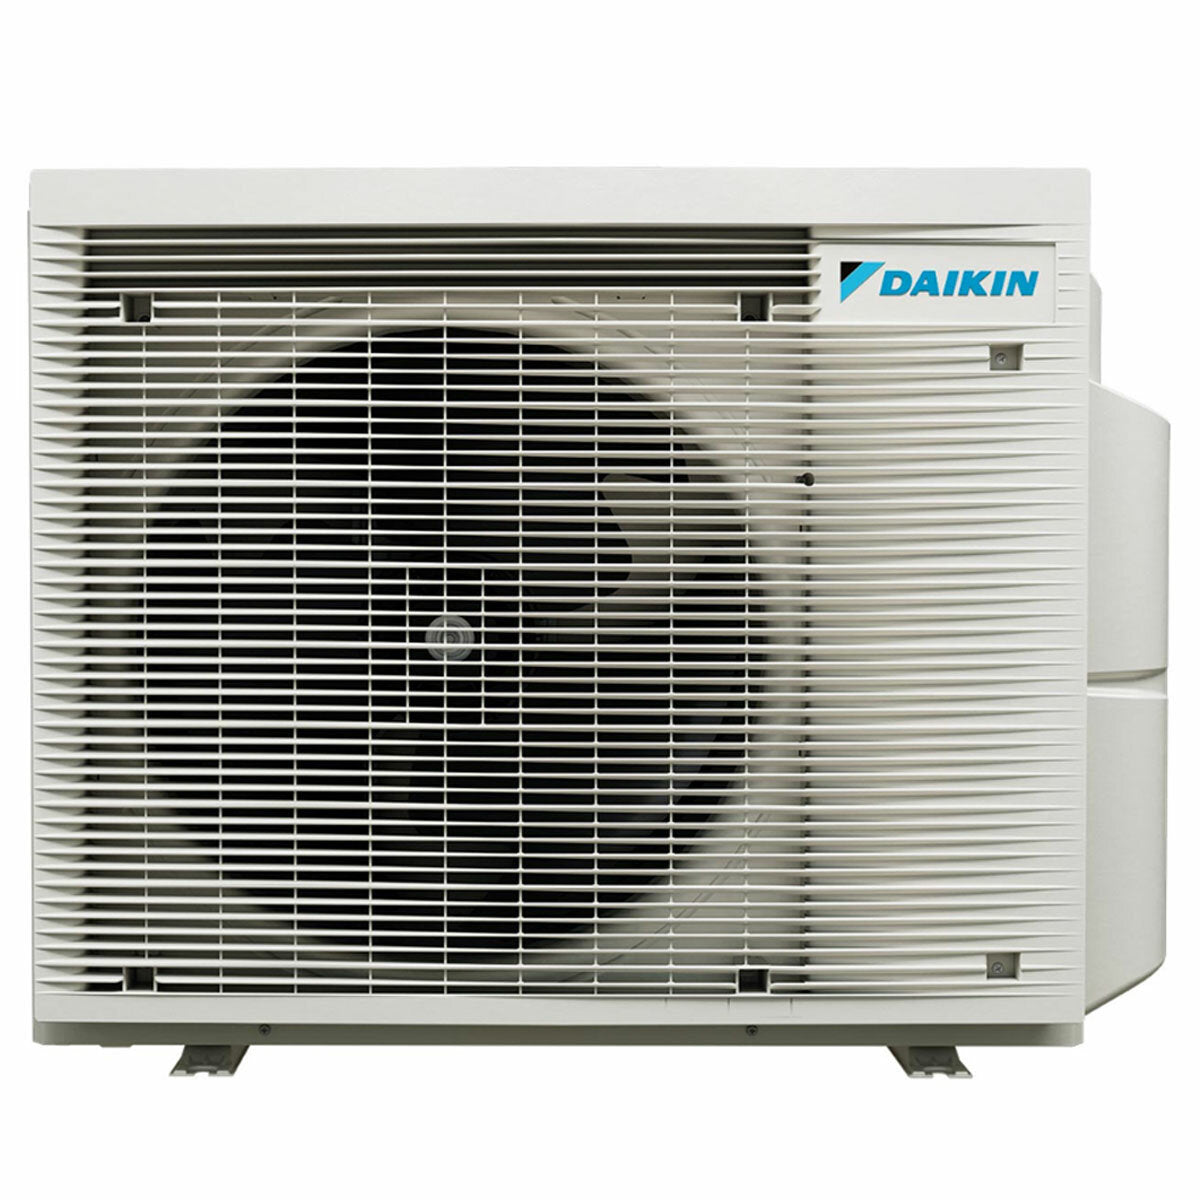 Daikin Stylish Trial Split Klimaanlage 7000 + 7000 + 15000 BTU Inverter A++ WLAN Außengerät 6,8 kW